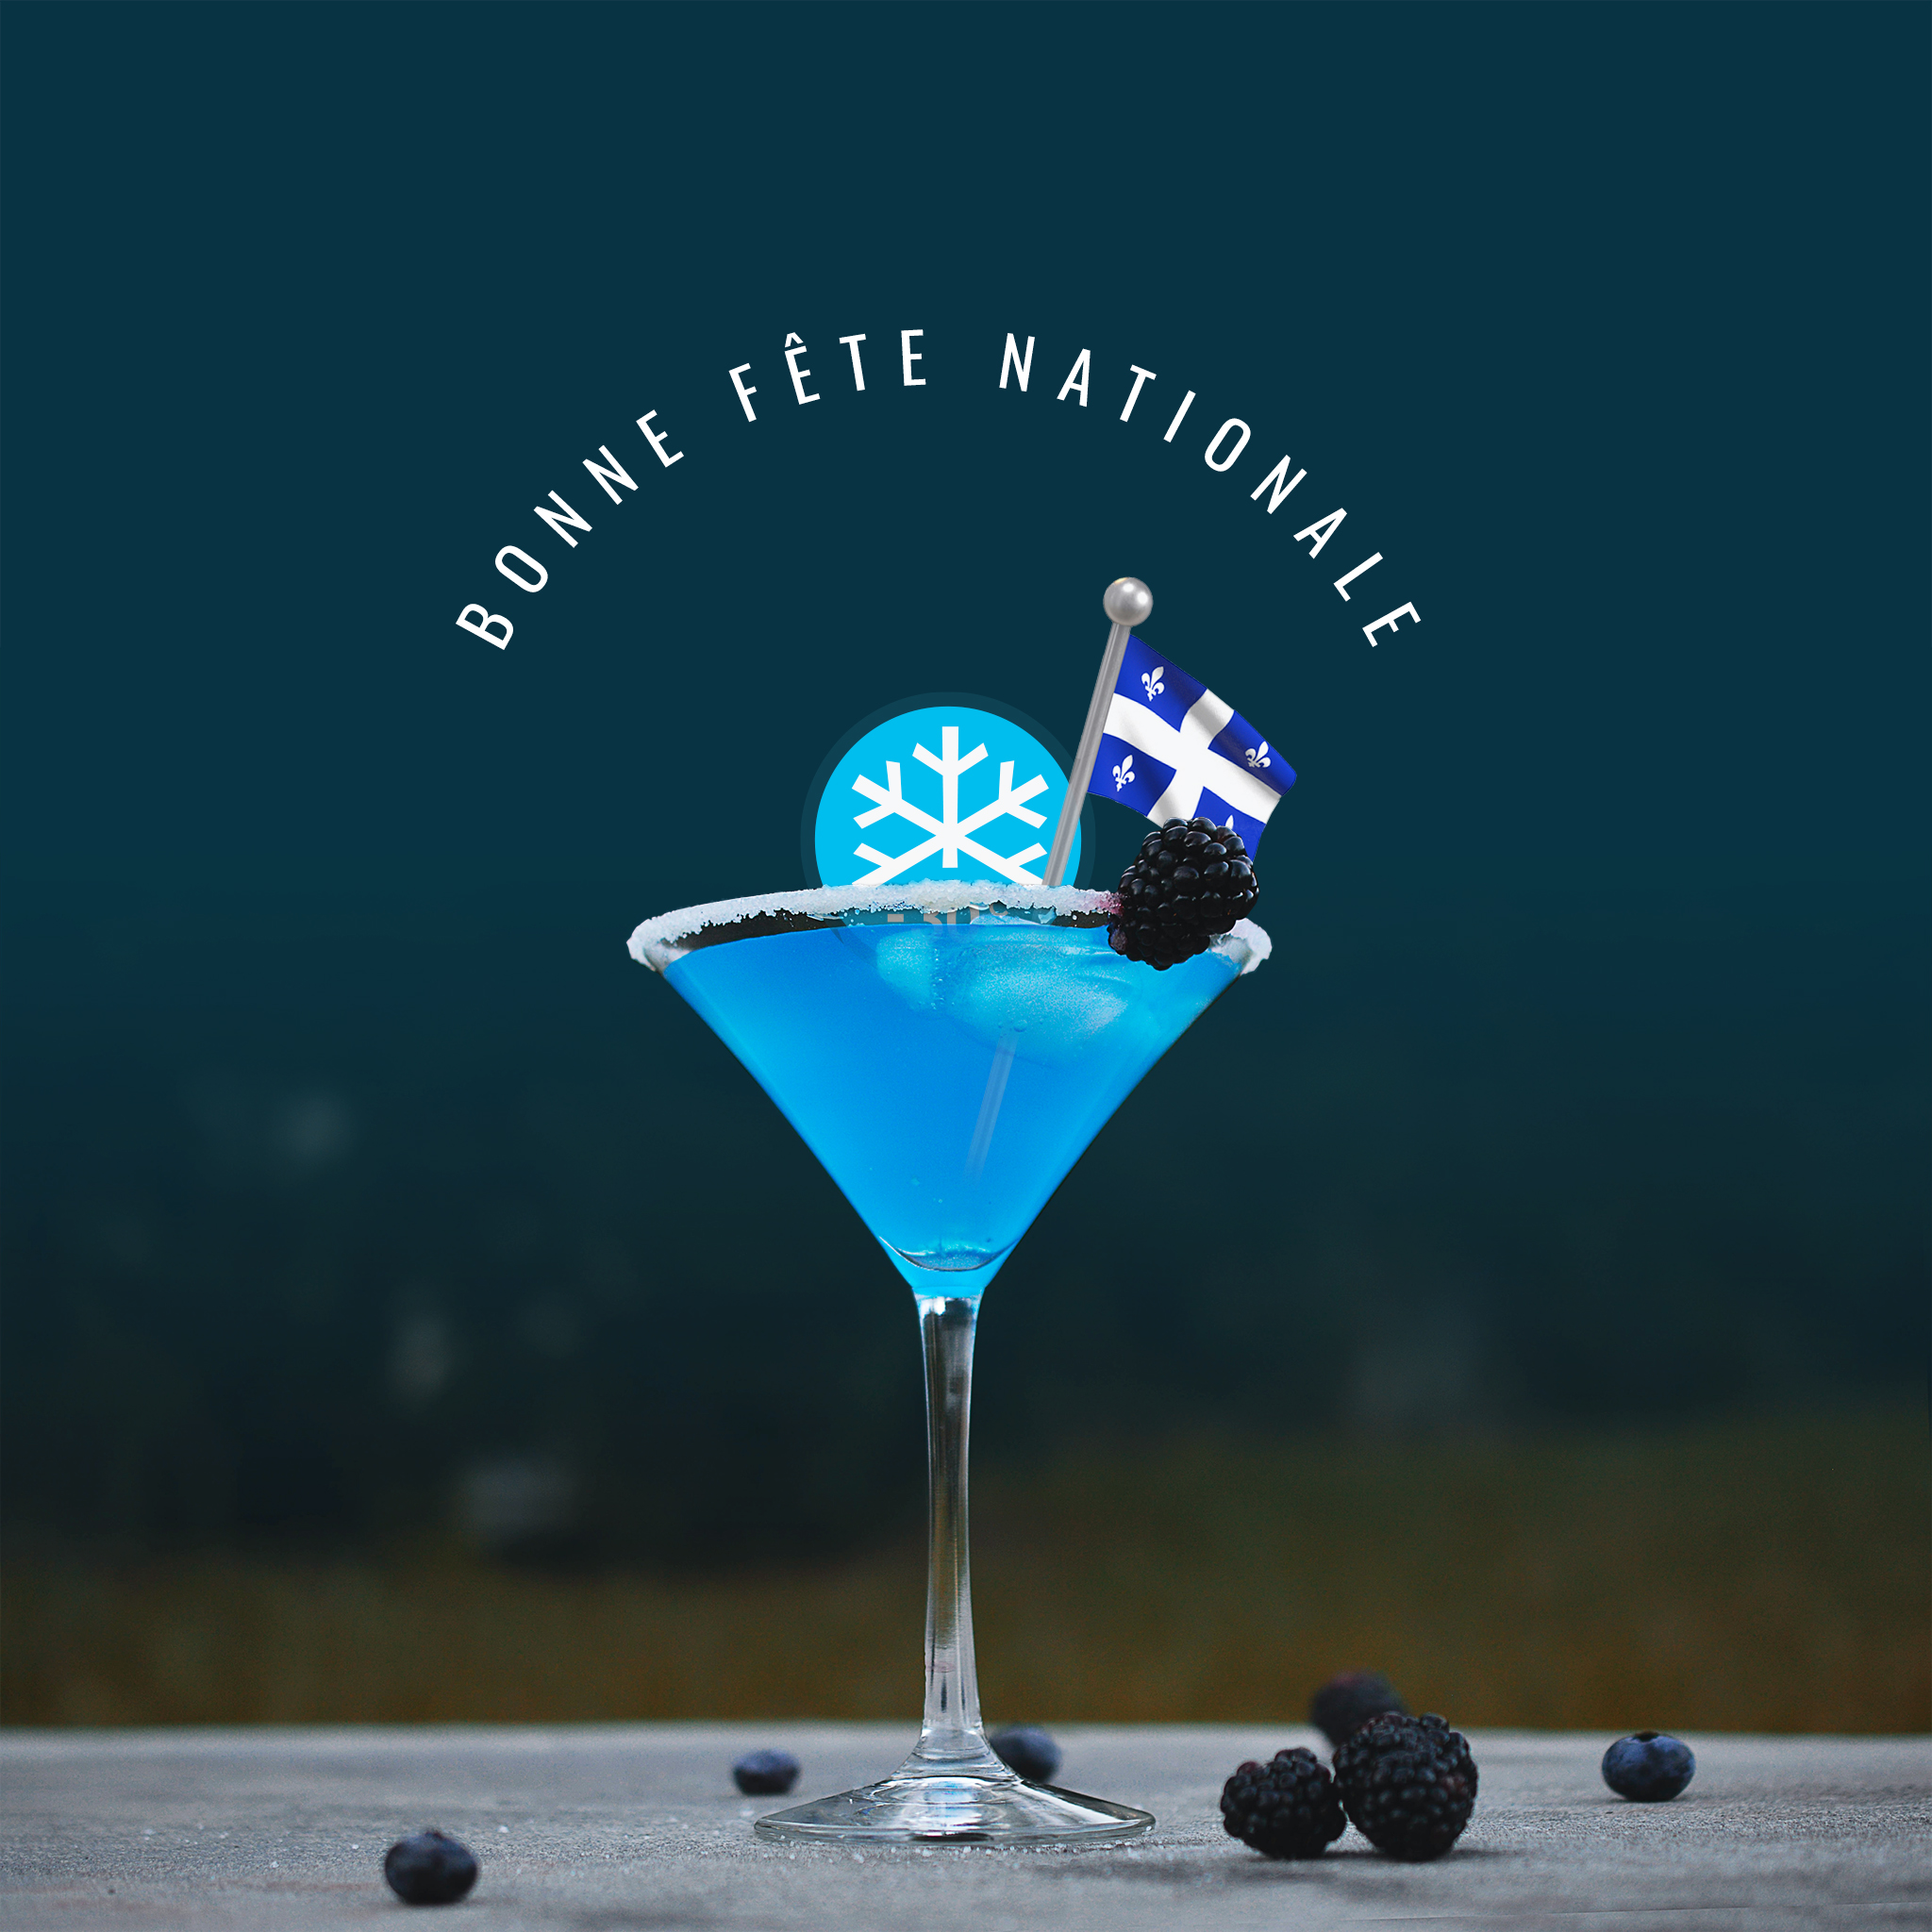 Bonne Fête Nationale à tous les Québécois.